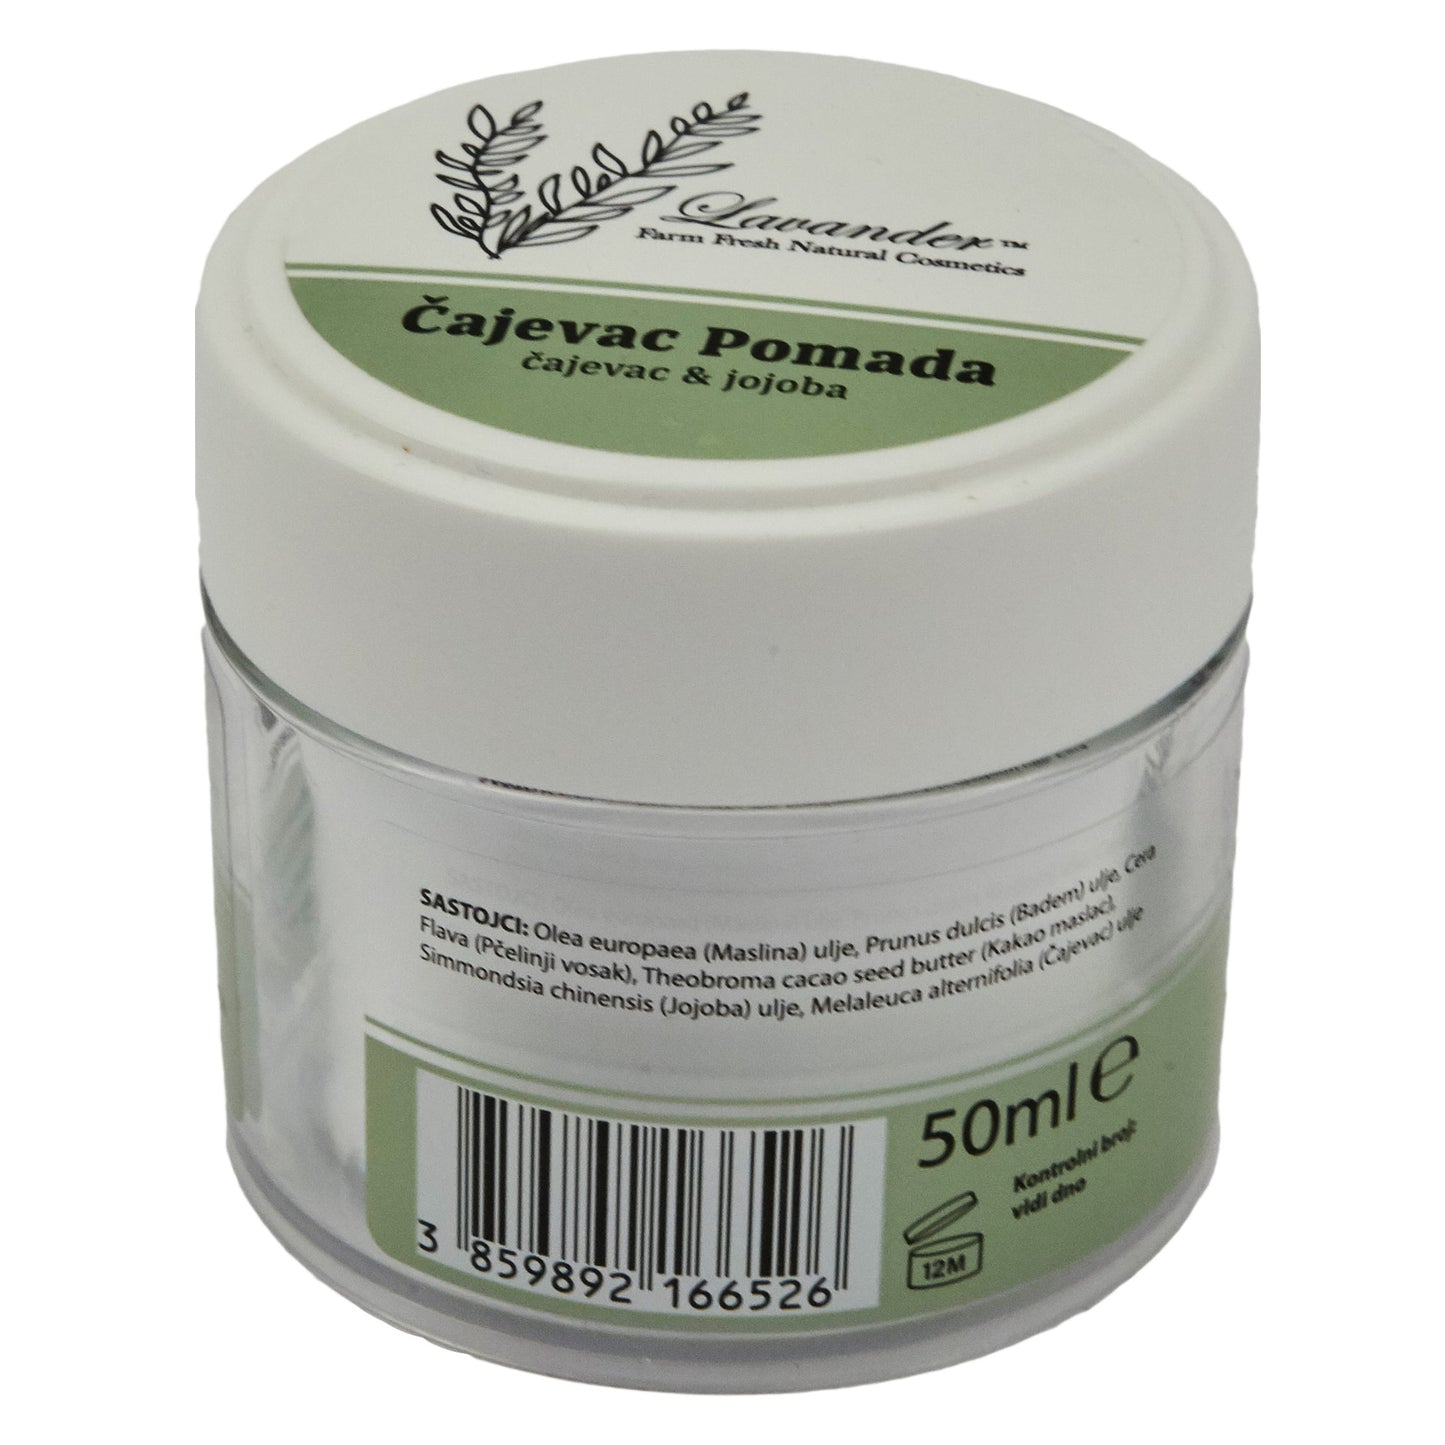 Teebaum- und Jojoba-Pomade – Balsam, antiseptische Creme mit Teebaum